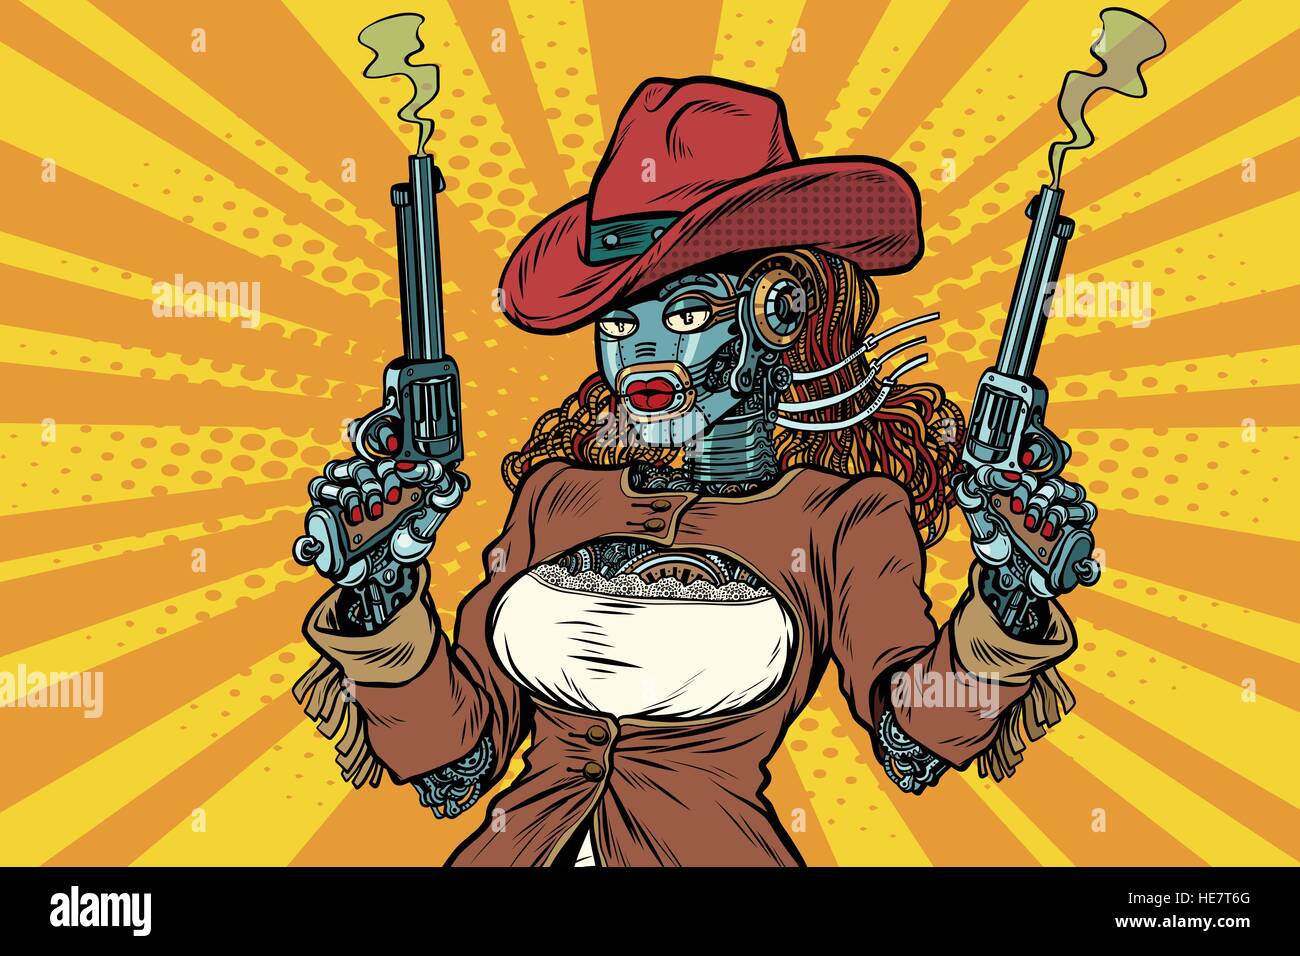 Femme Robot steampunk bandit Wild West Illustration de Vecteur